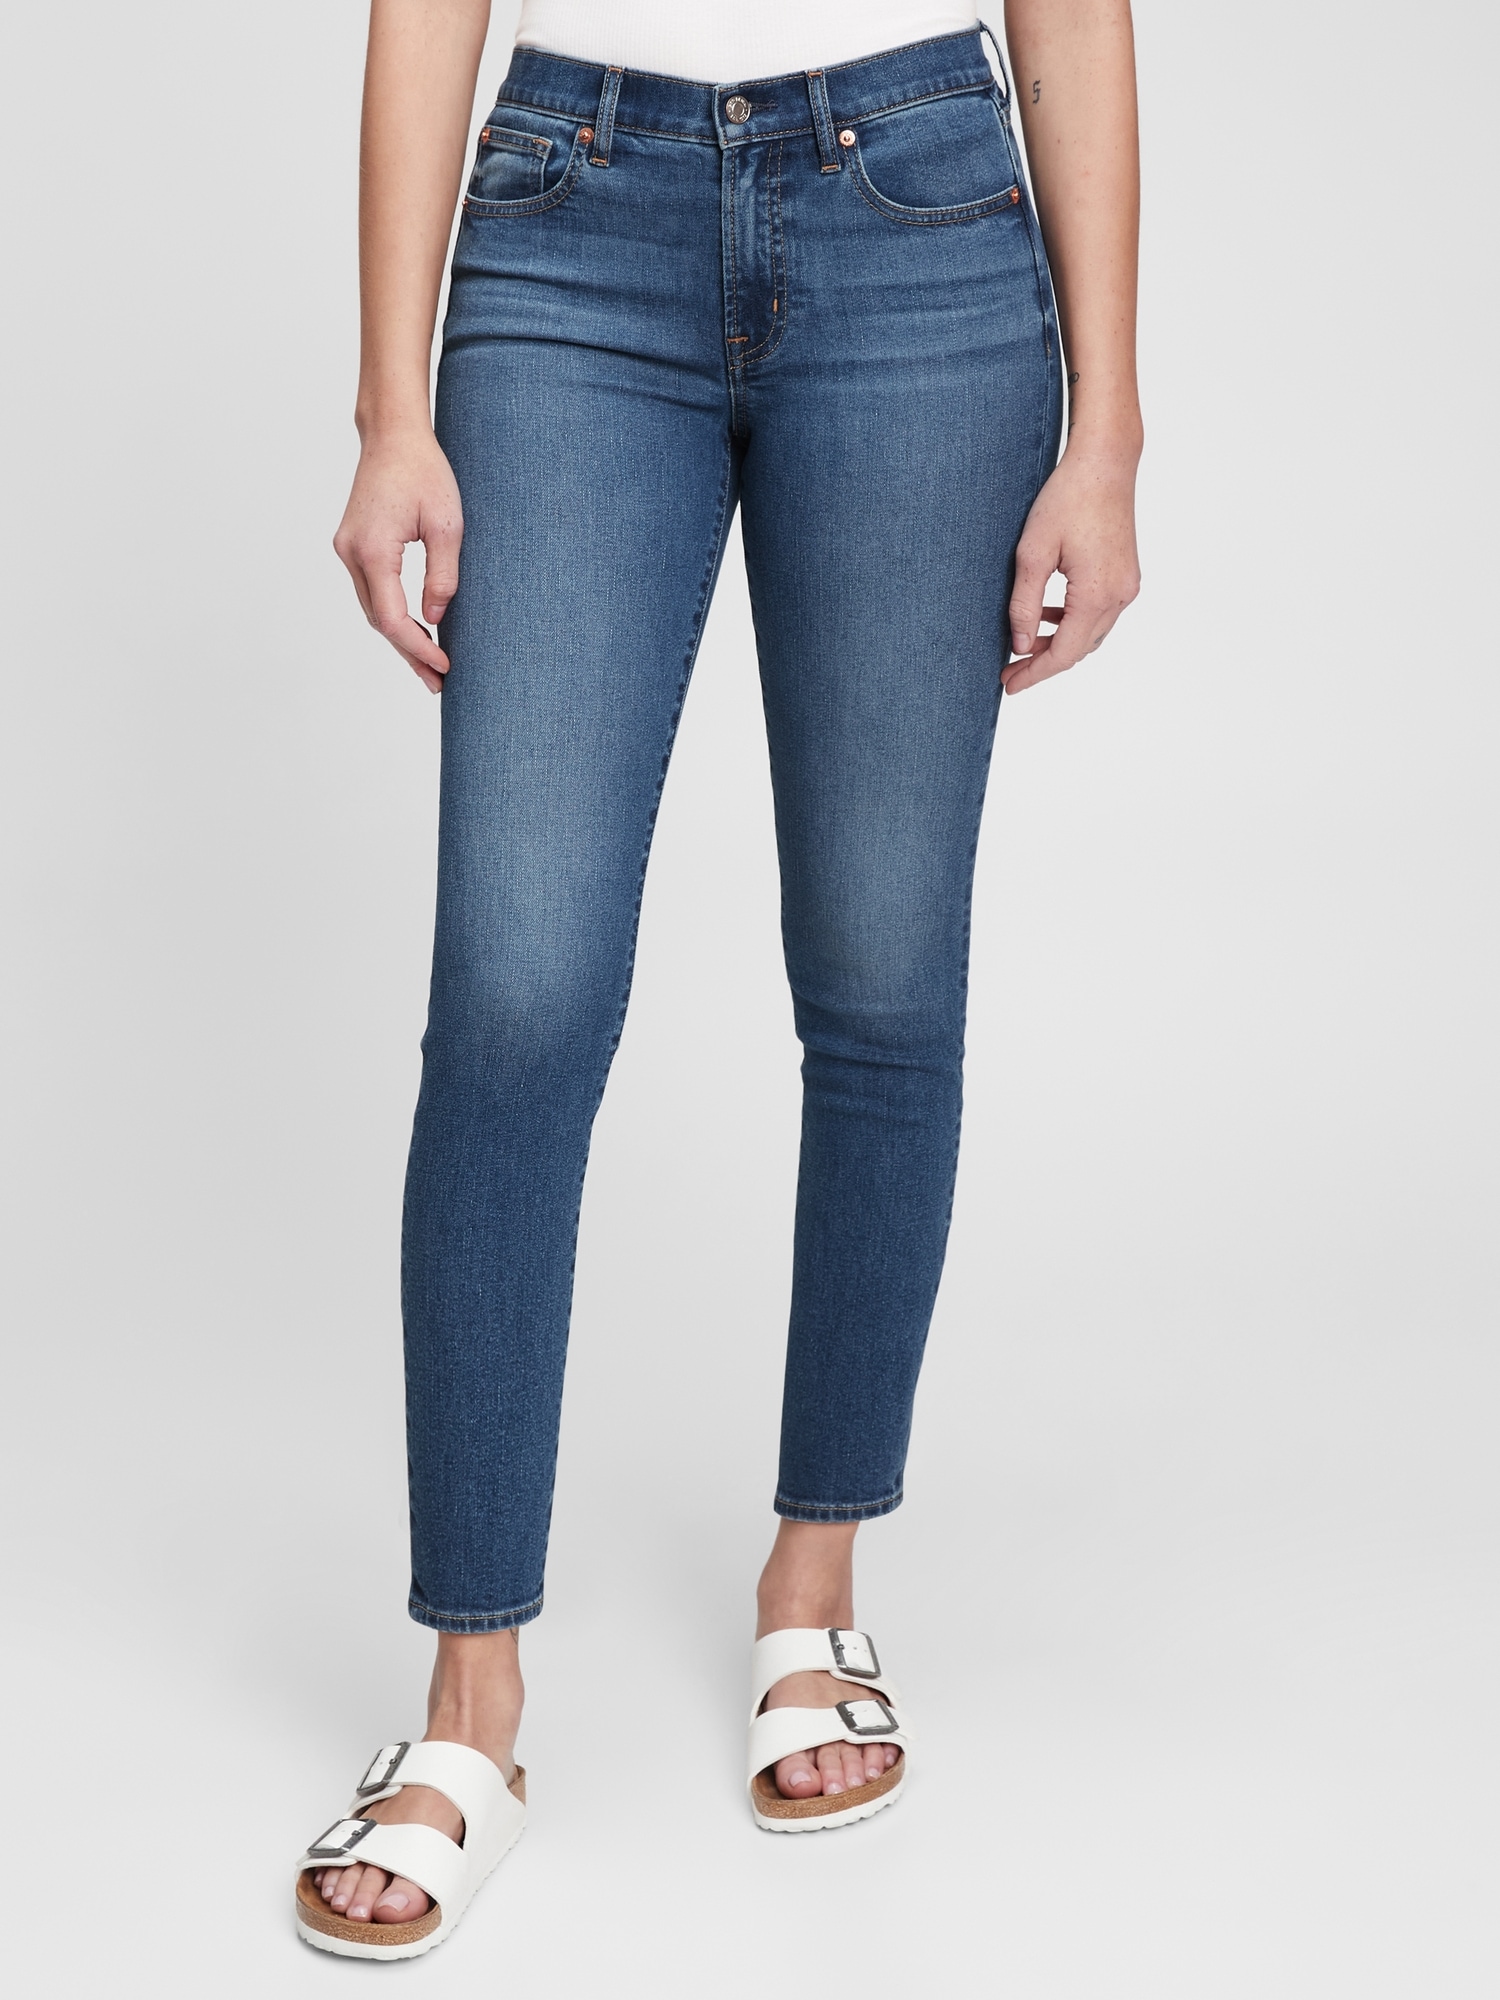 Gap Mid Rise True Skinny Jeans With Washwell In Medium Indigo